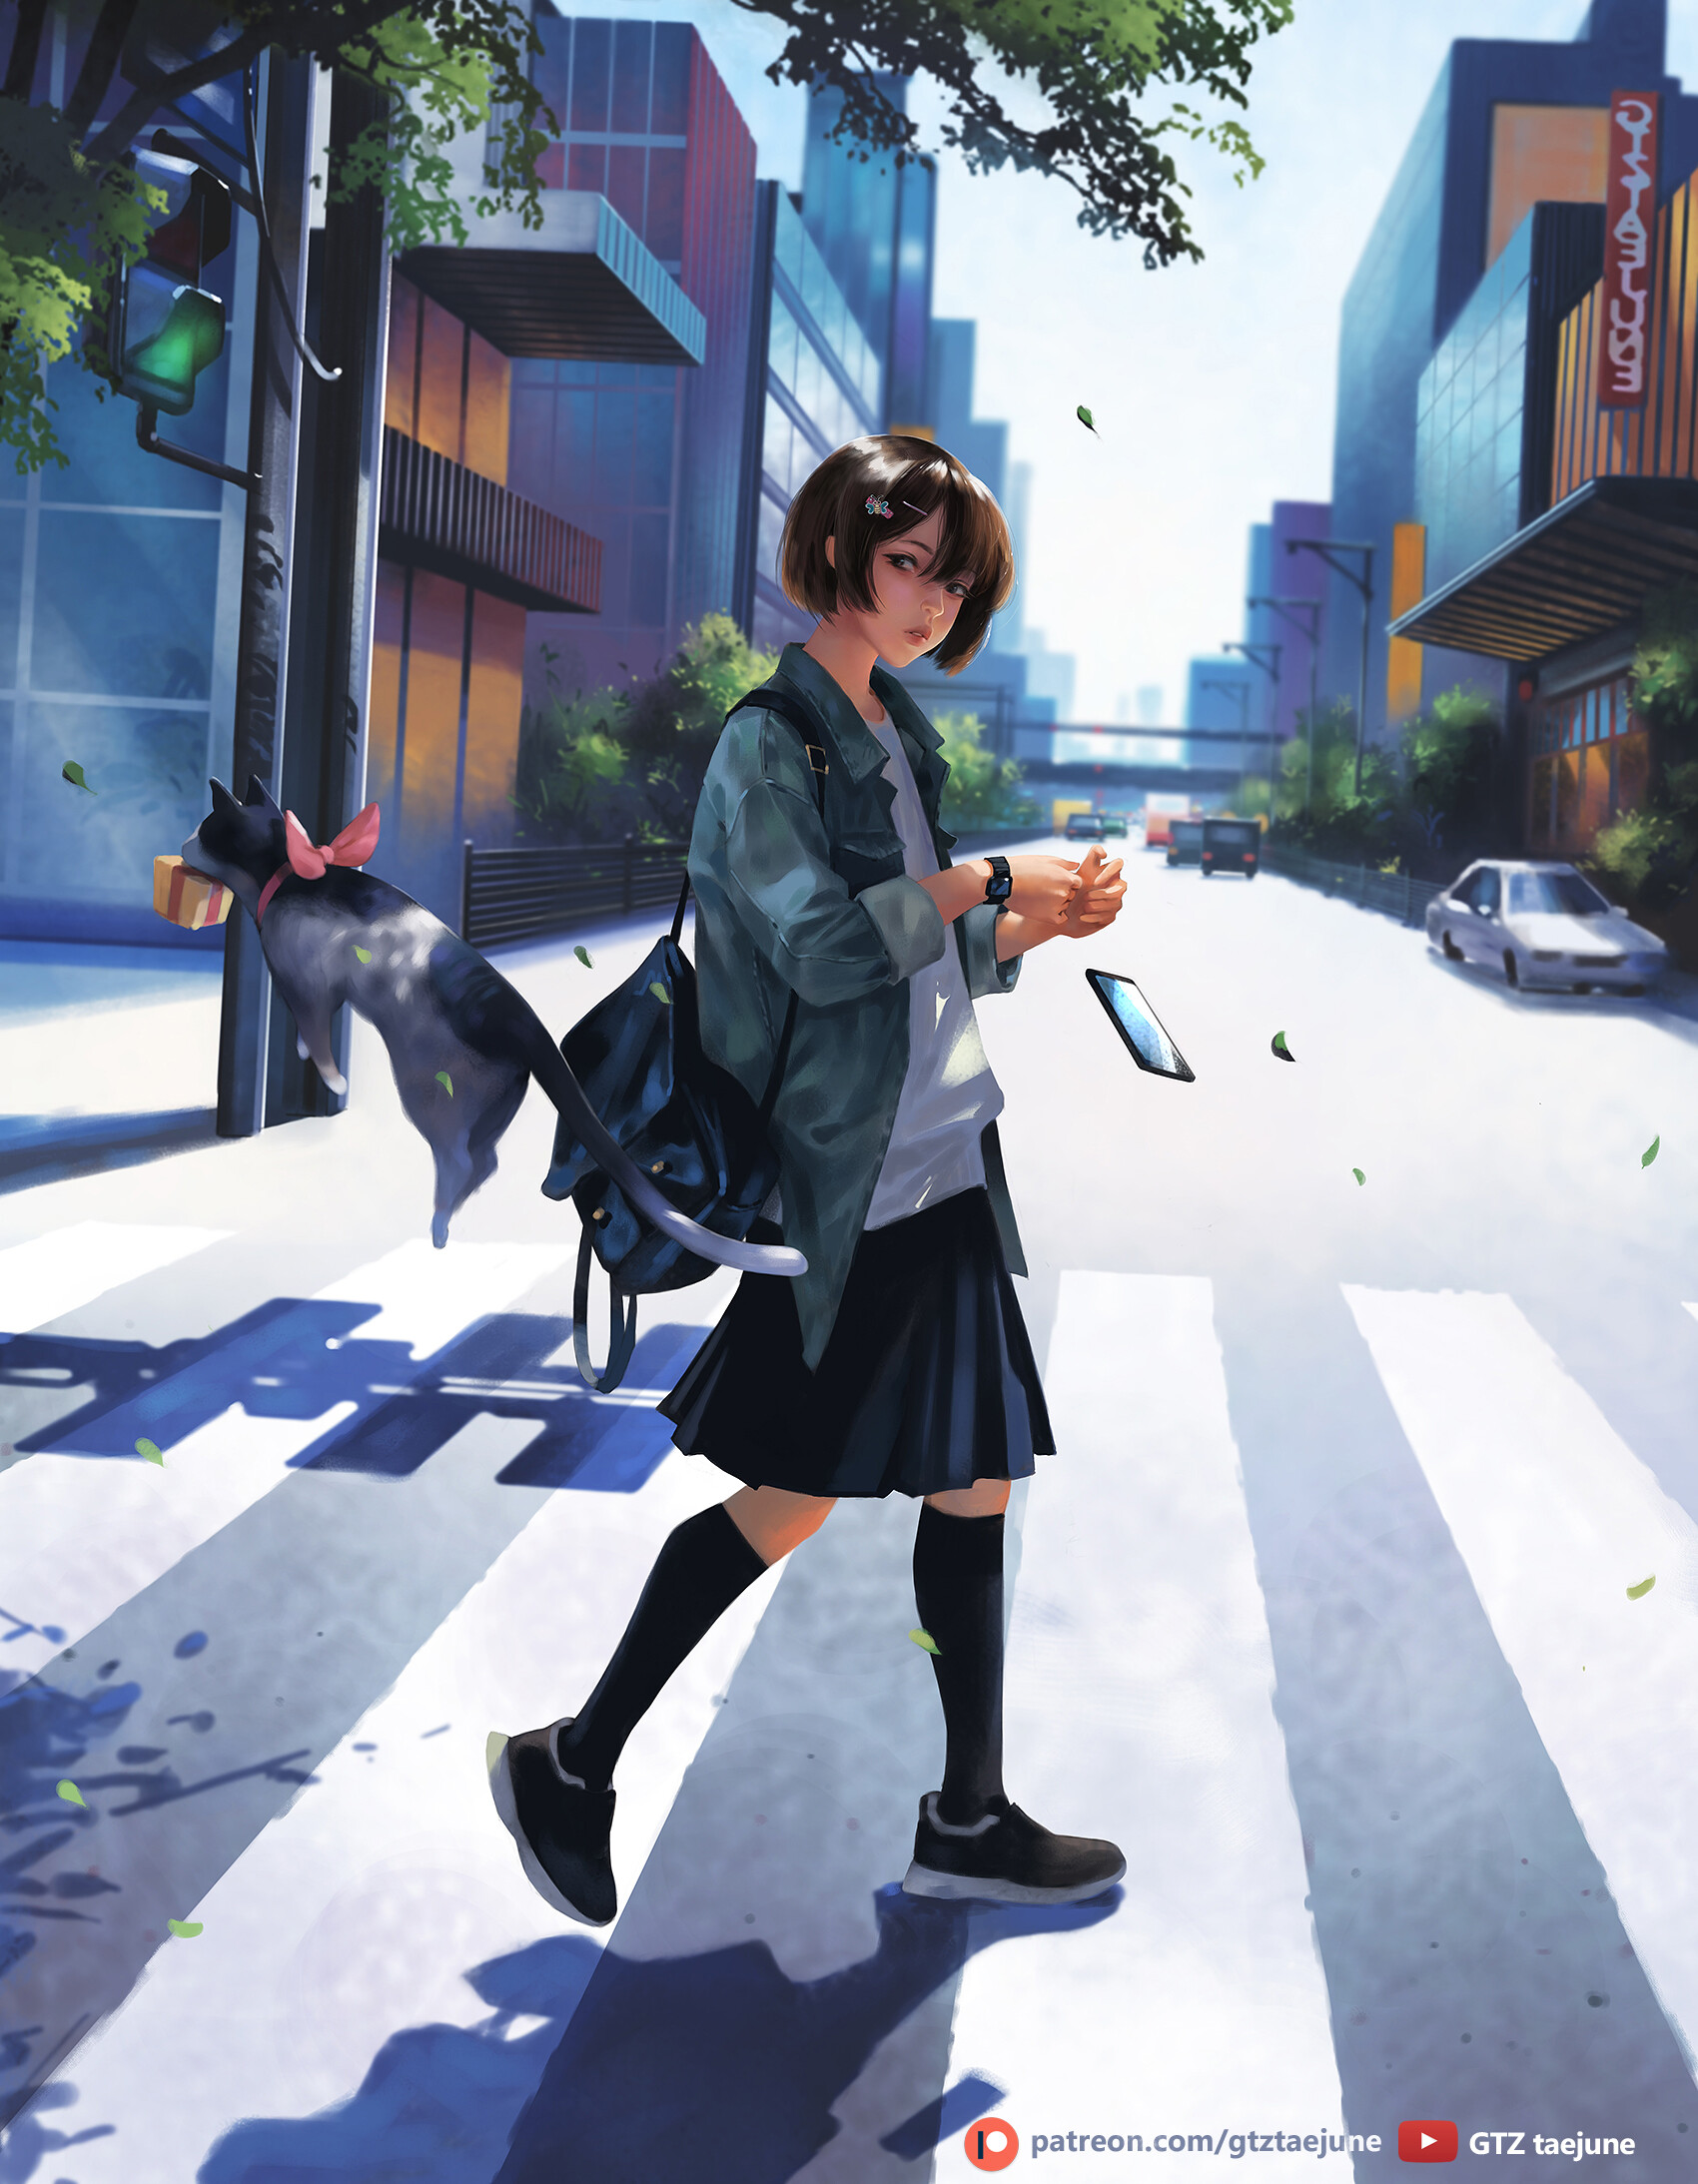 Anime Girls Original Characters Anime Fantasy Art Women Brunette Cats Jacket Skirt Socks Sneakers Ce 1700x2187